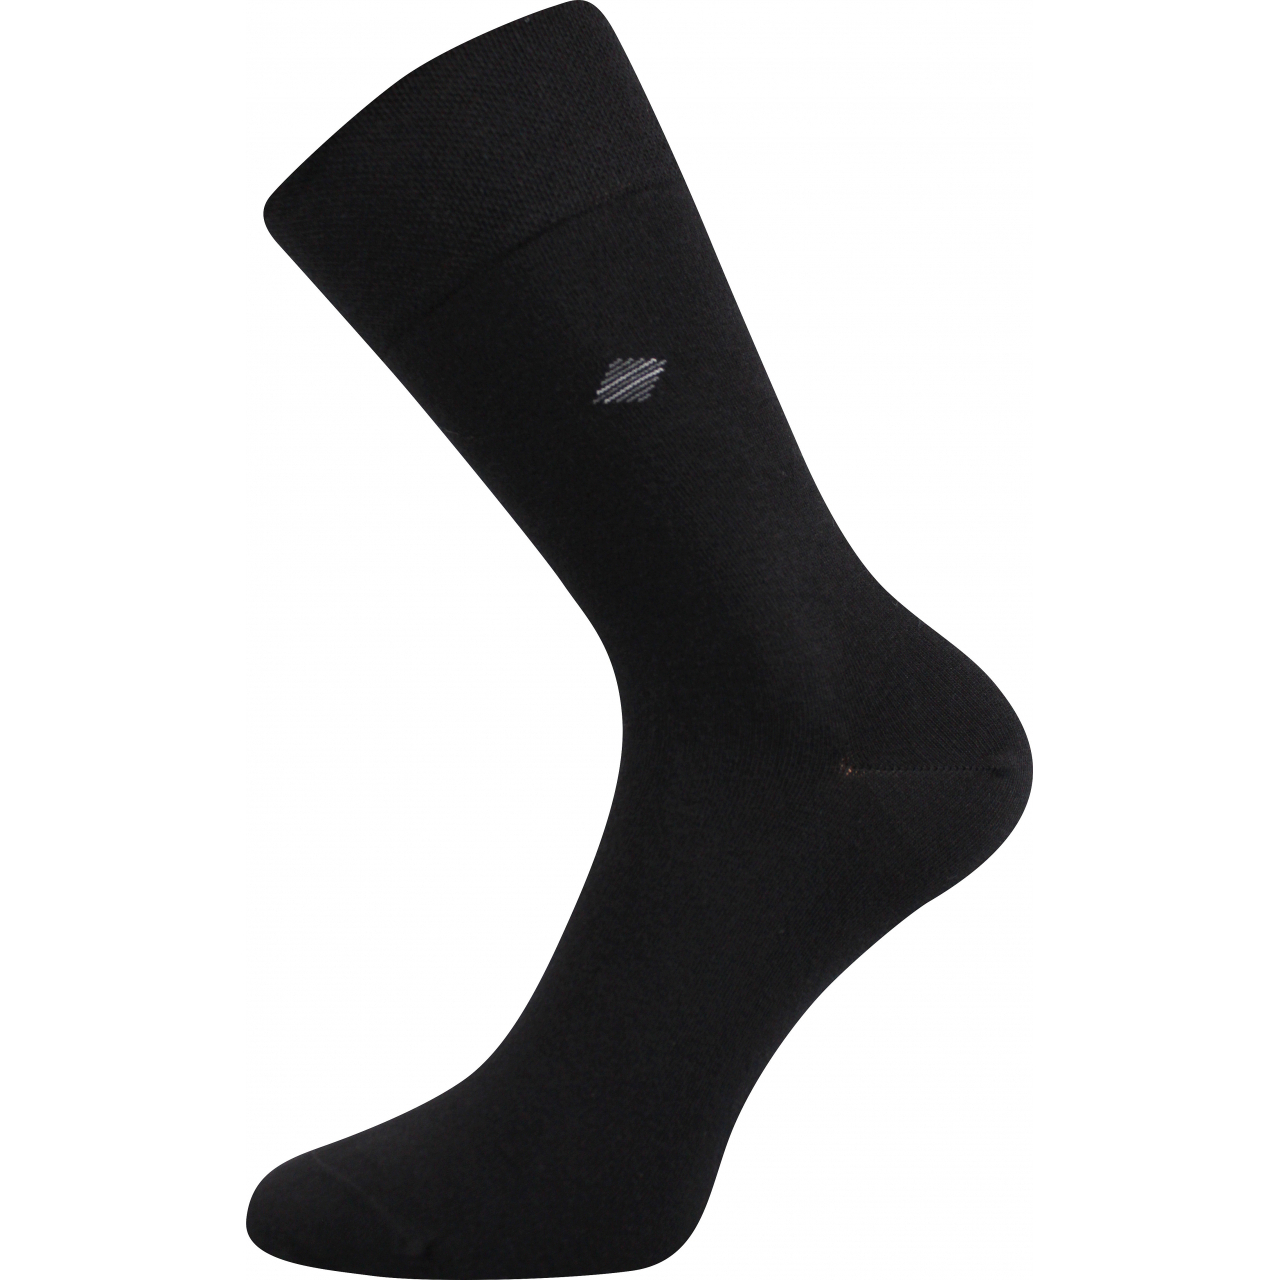 Ponožky pánské společenské Lonka Diagon - černé, 39-42